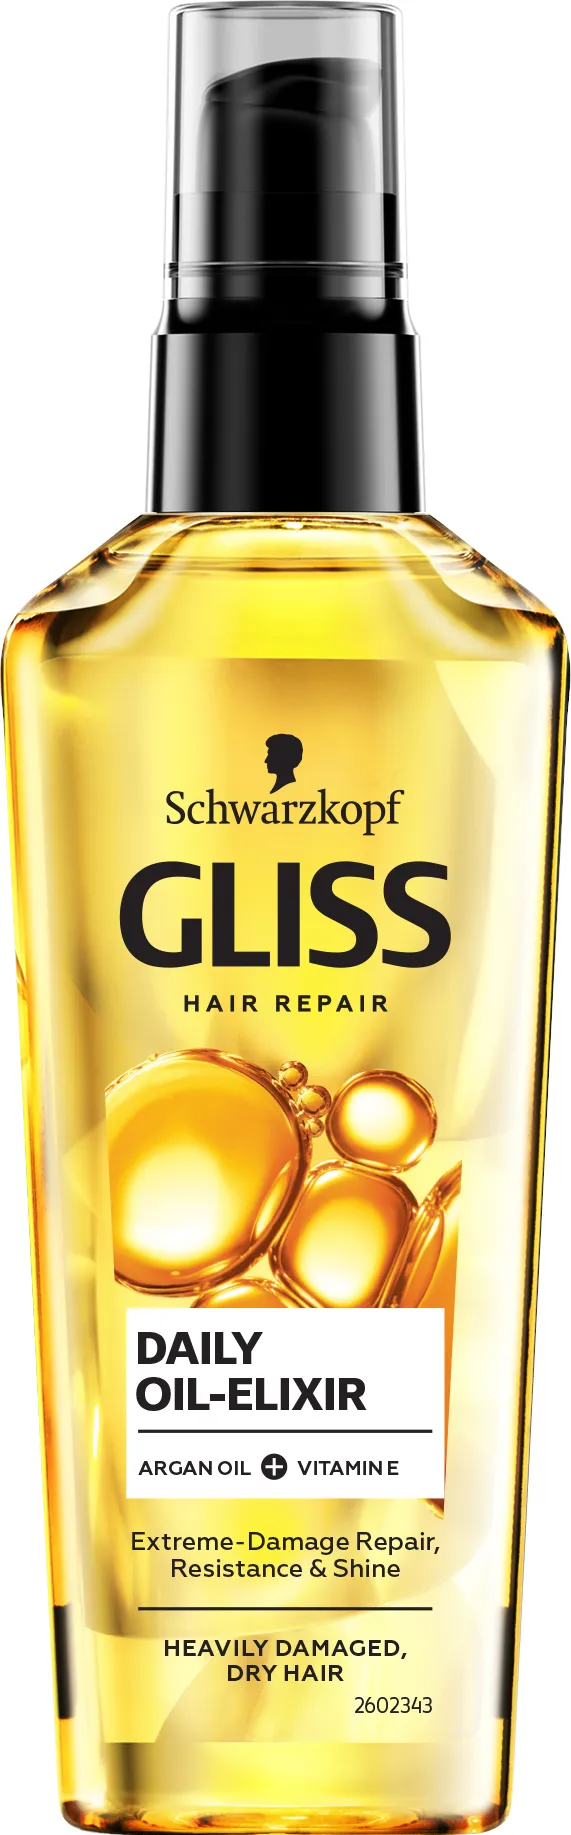 Schwarzkopf Gliss Kur Daily-Oil Elixir Olejek do włosów Olej arganowy & Witamina E, 75 ml